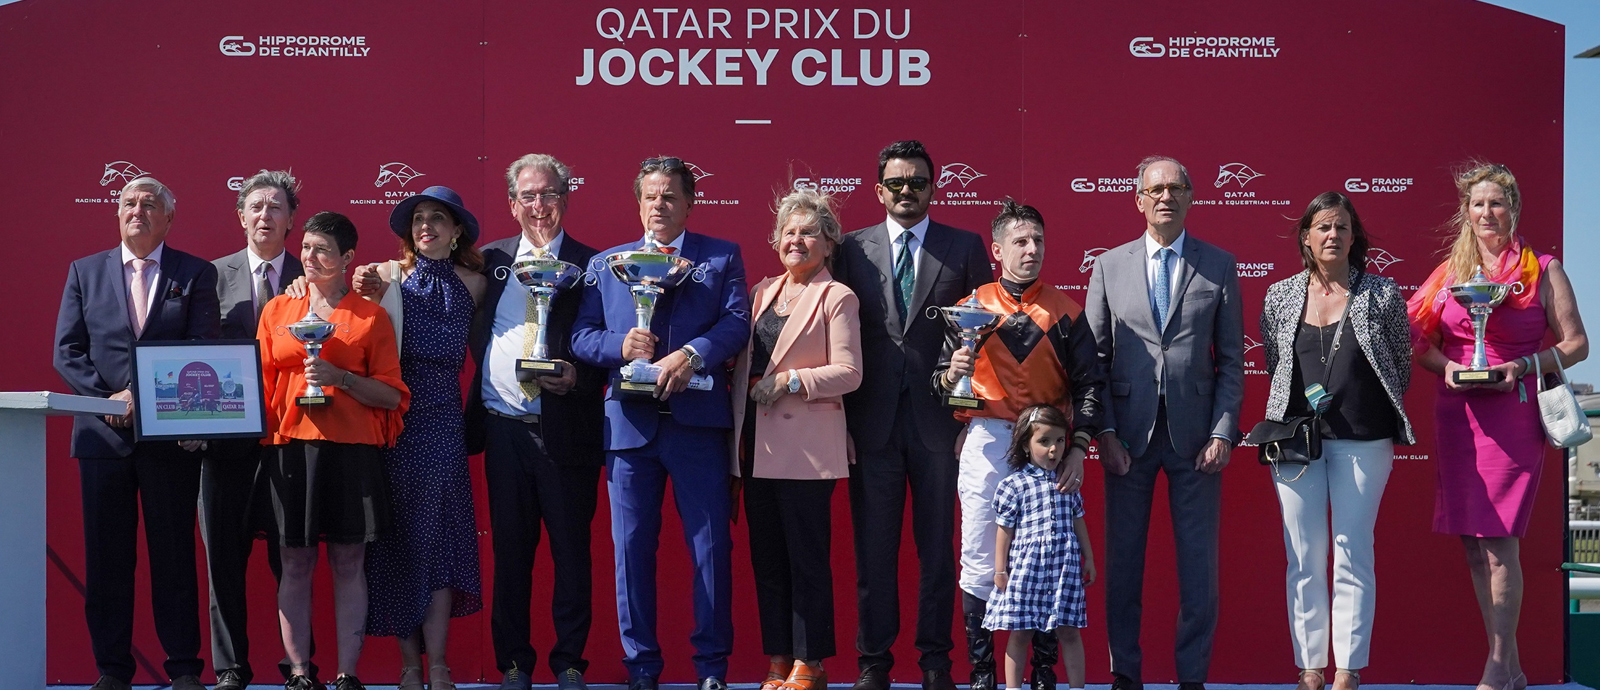 Sheikh Joaan crowns Qatar Prix du Jockey Club winners